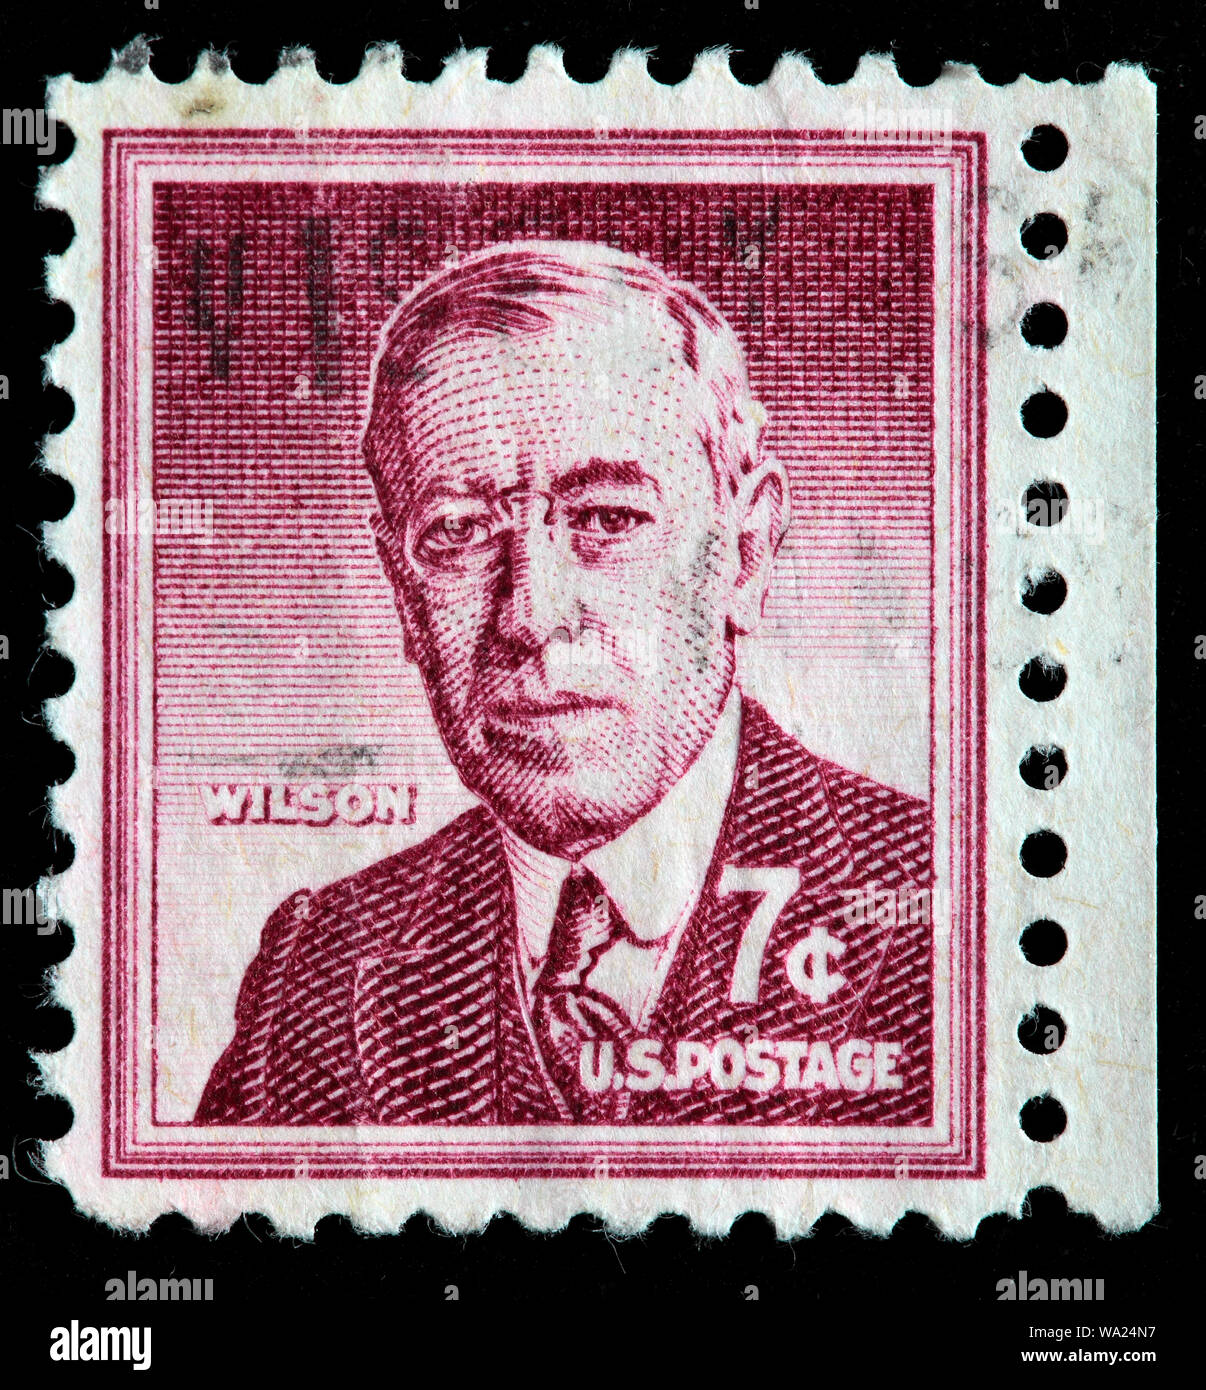 Woodrow Wilson (1856-1924), Präsident der USA, Briefmarke, USA, 1956 Stockfoto